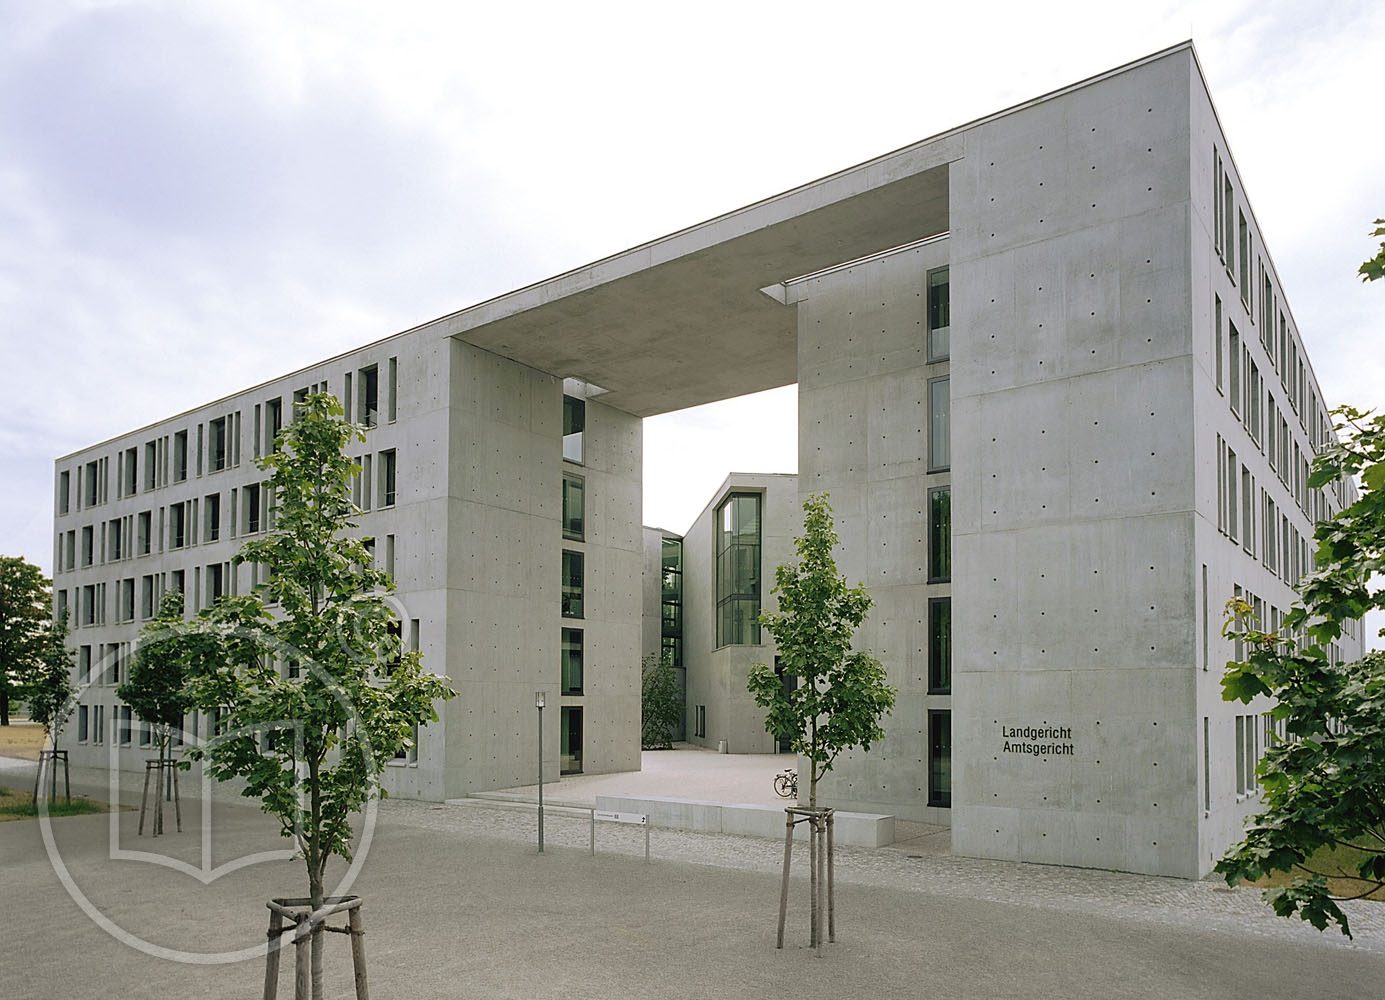 Land- und Amtsgericht Frankfurt